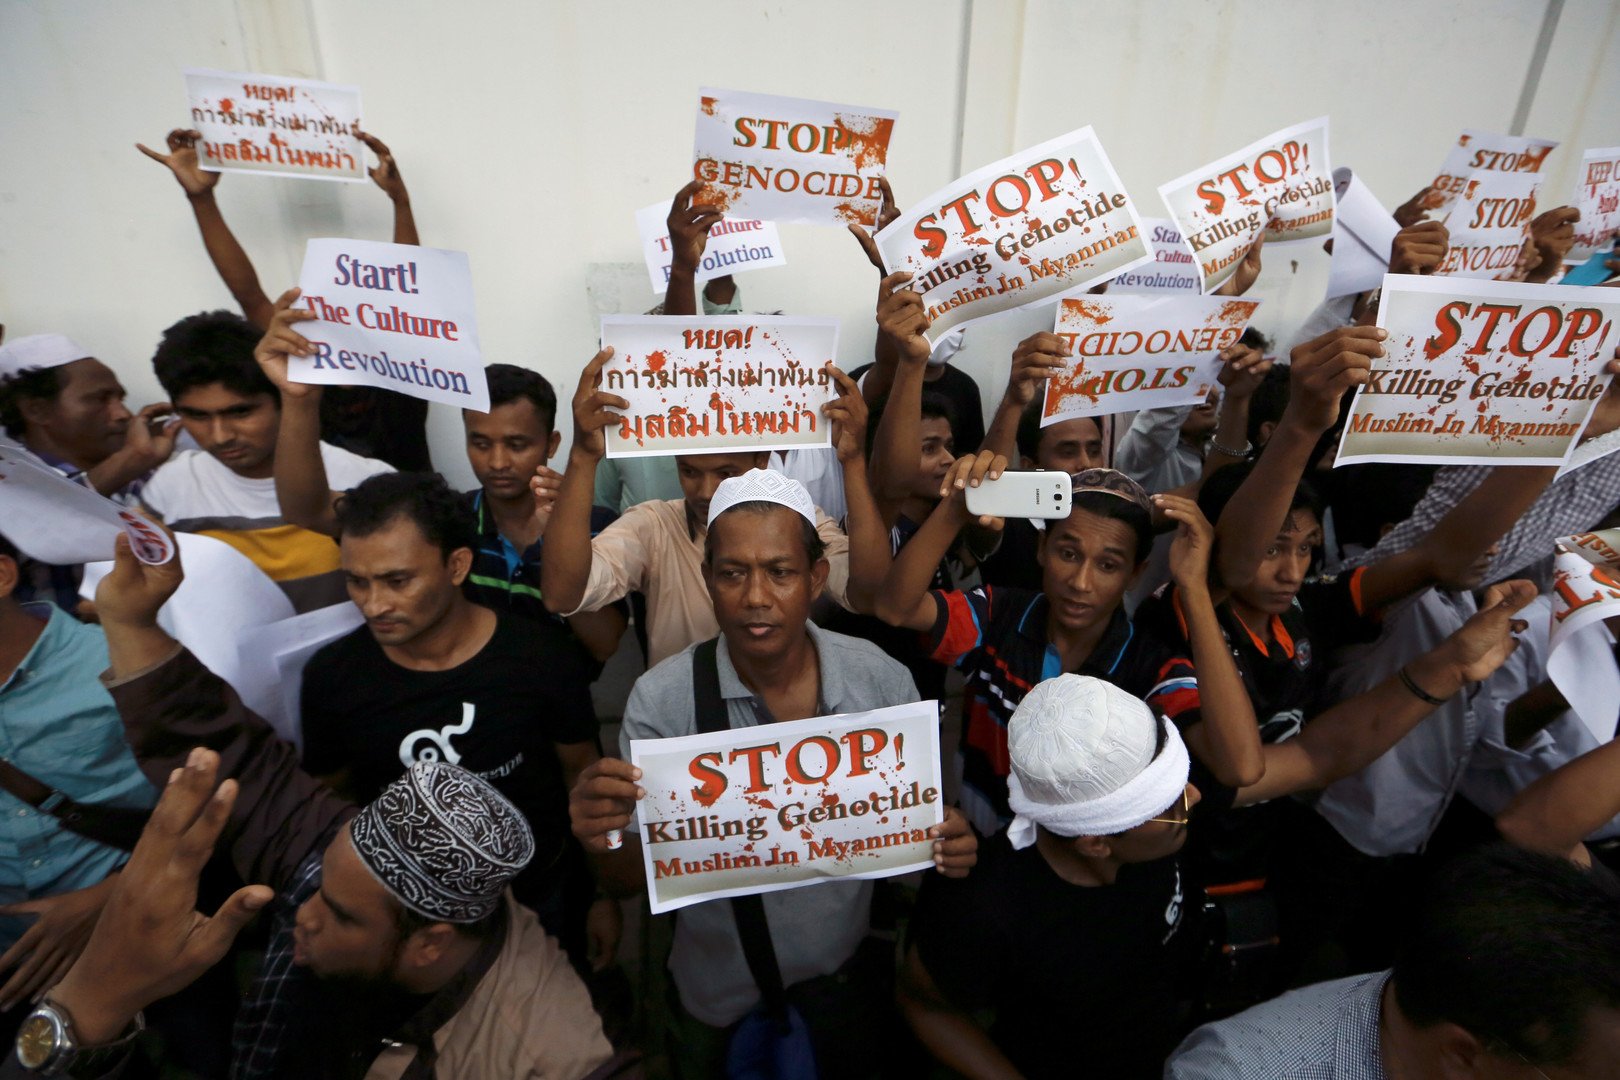 مظاهرات في آسيا احتجاجا على اضطهاد المسلمين في ميانمار